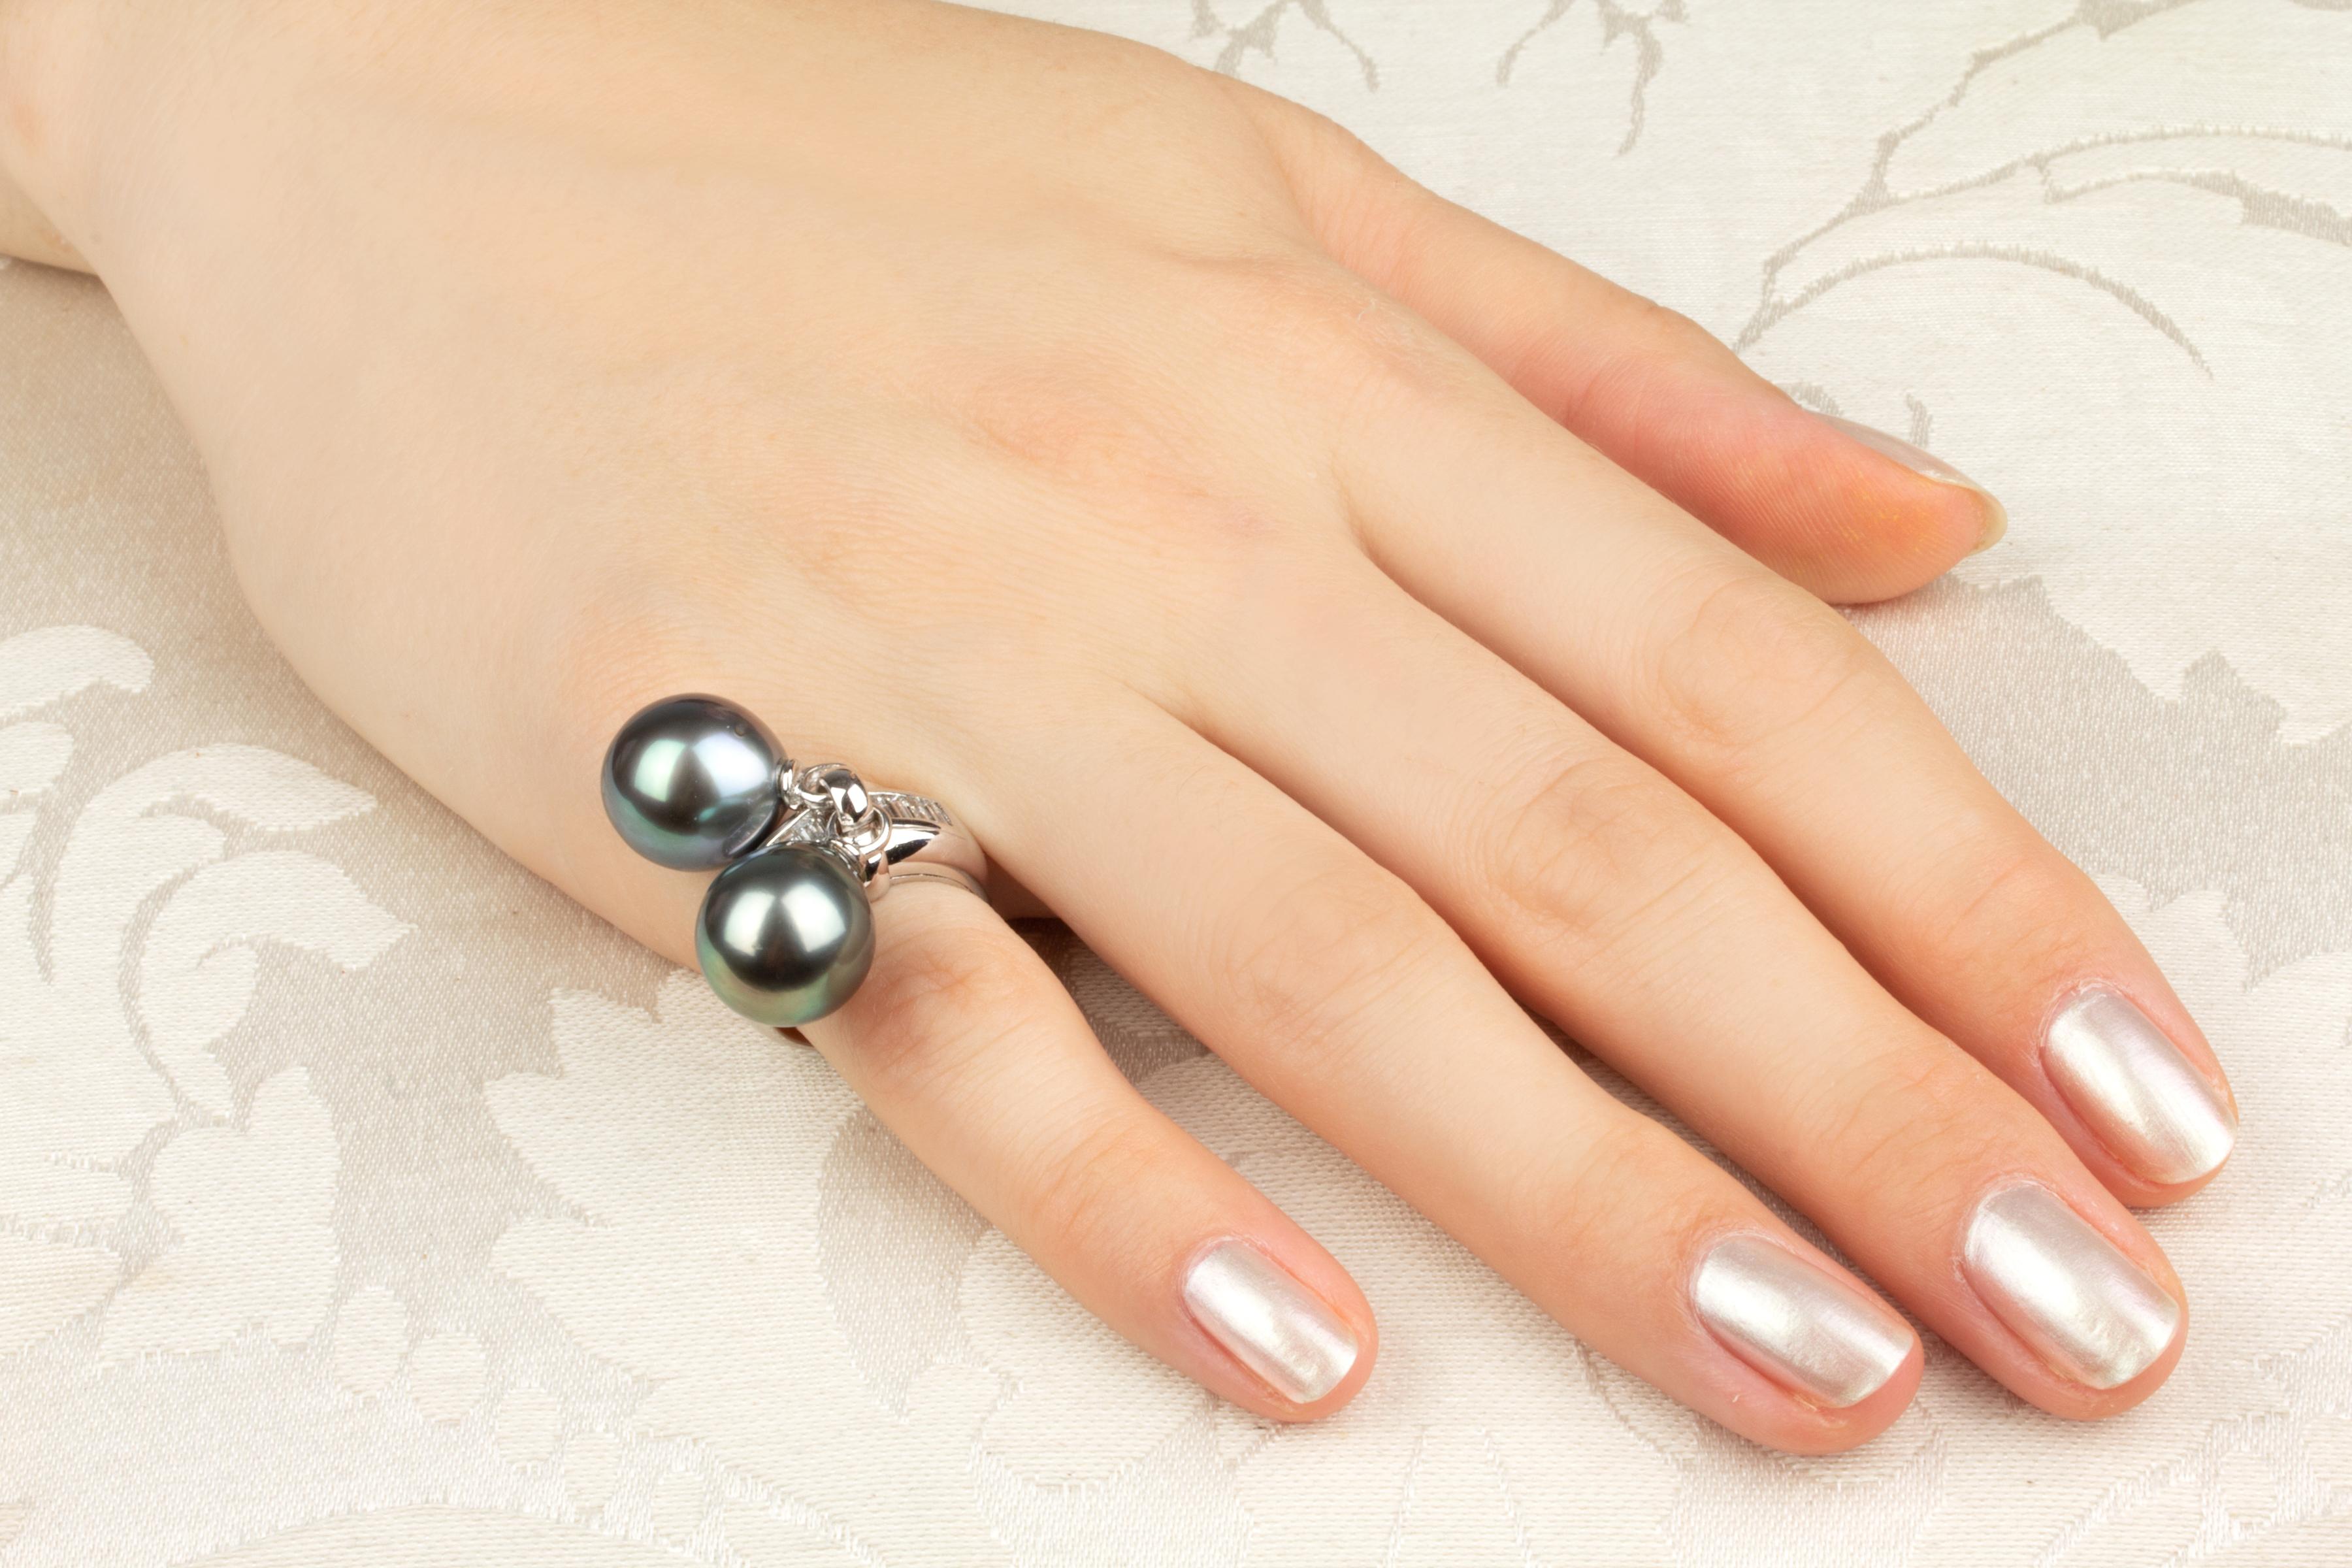 Dieser Ring aus Tahiti-Perlen und Diamanten besteht aus zwei Perlen mit einem Durchmesser von 13 mm. Die Perlen sind unbehandelt. Sie haben einen feinen Glanz und ihre natürliche Farbe wurde in keiner Weise verbessert. Jede Perle ist separat in der